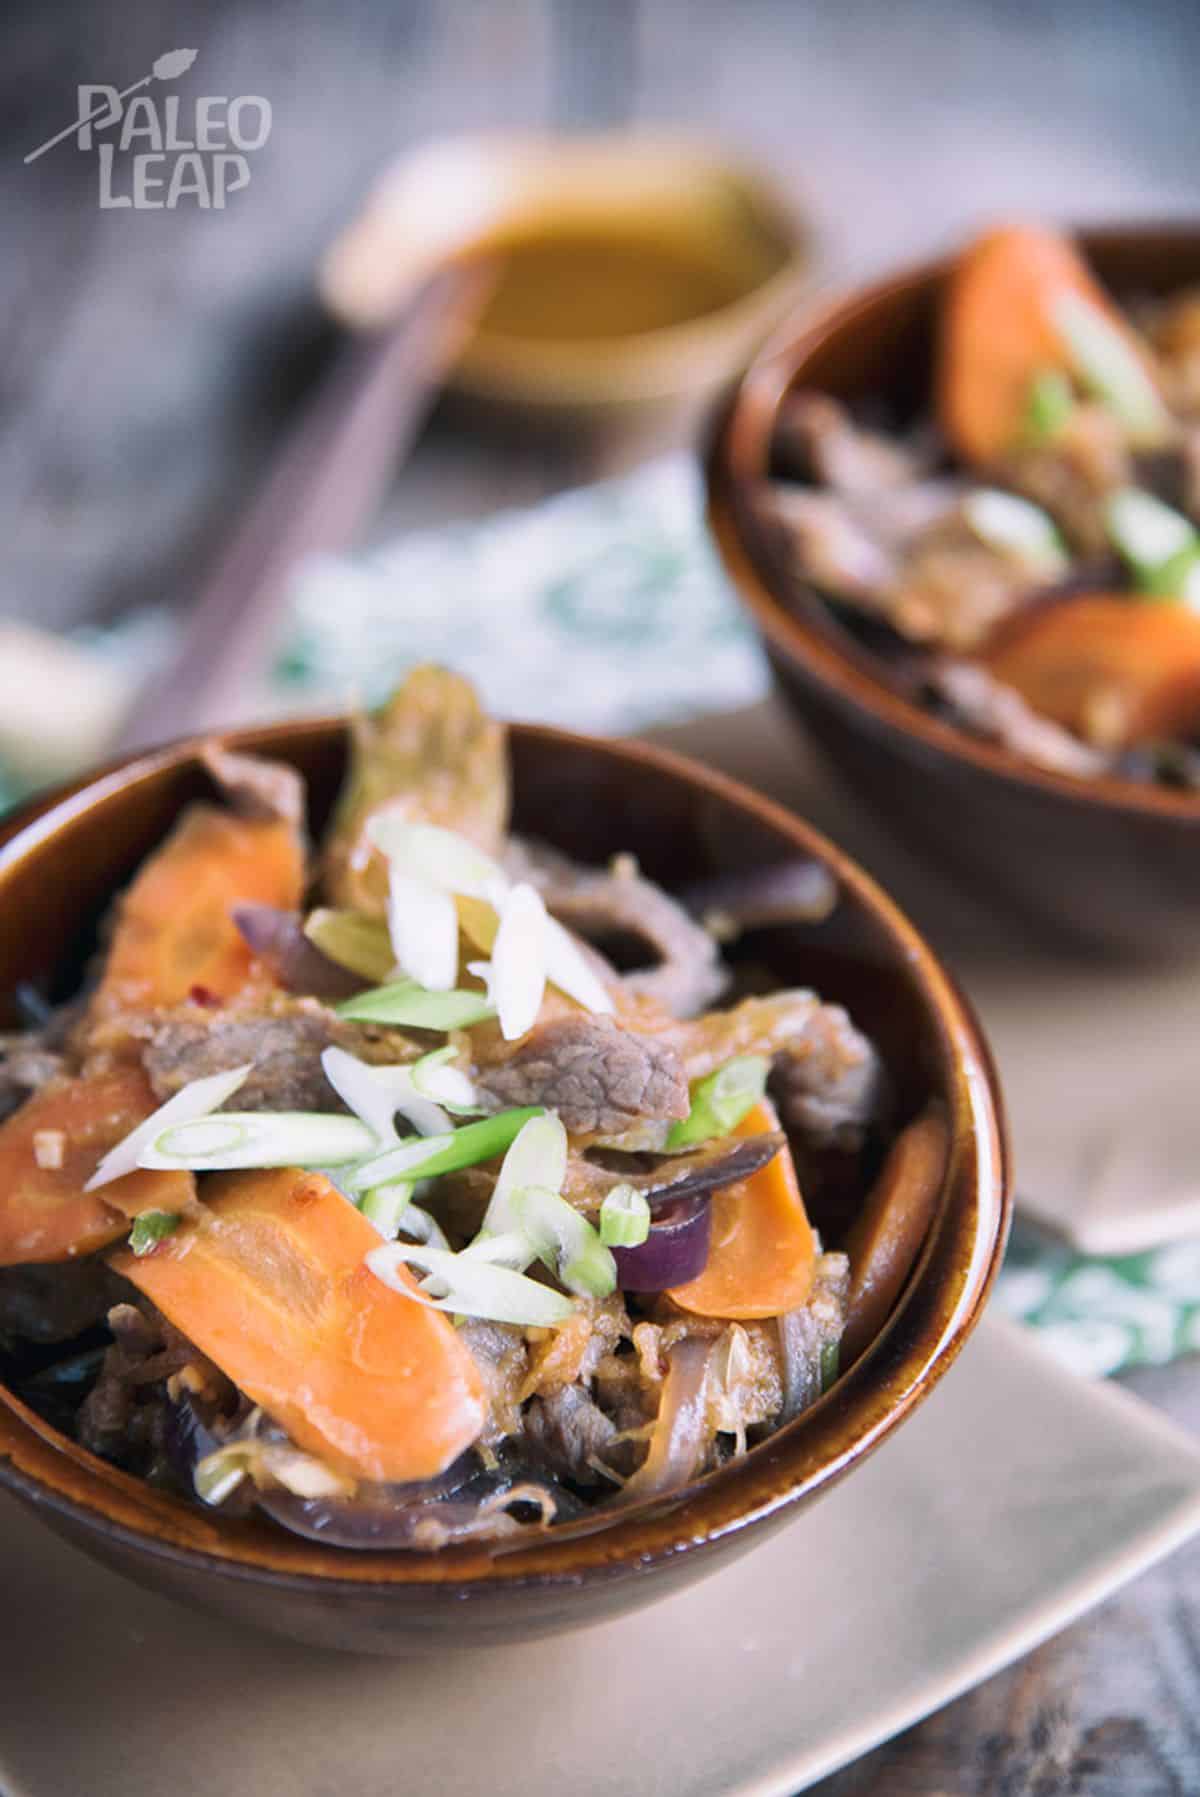 Korean Beef Stir-Fry in a brown bowl.